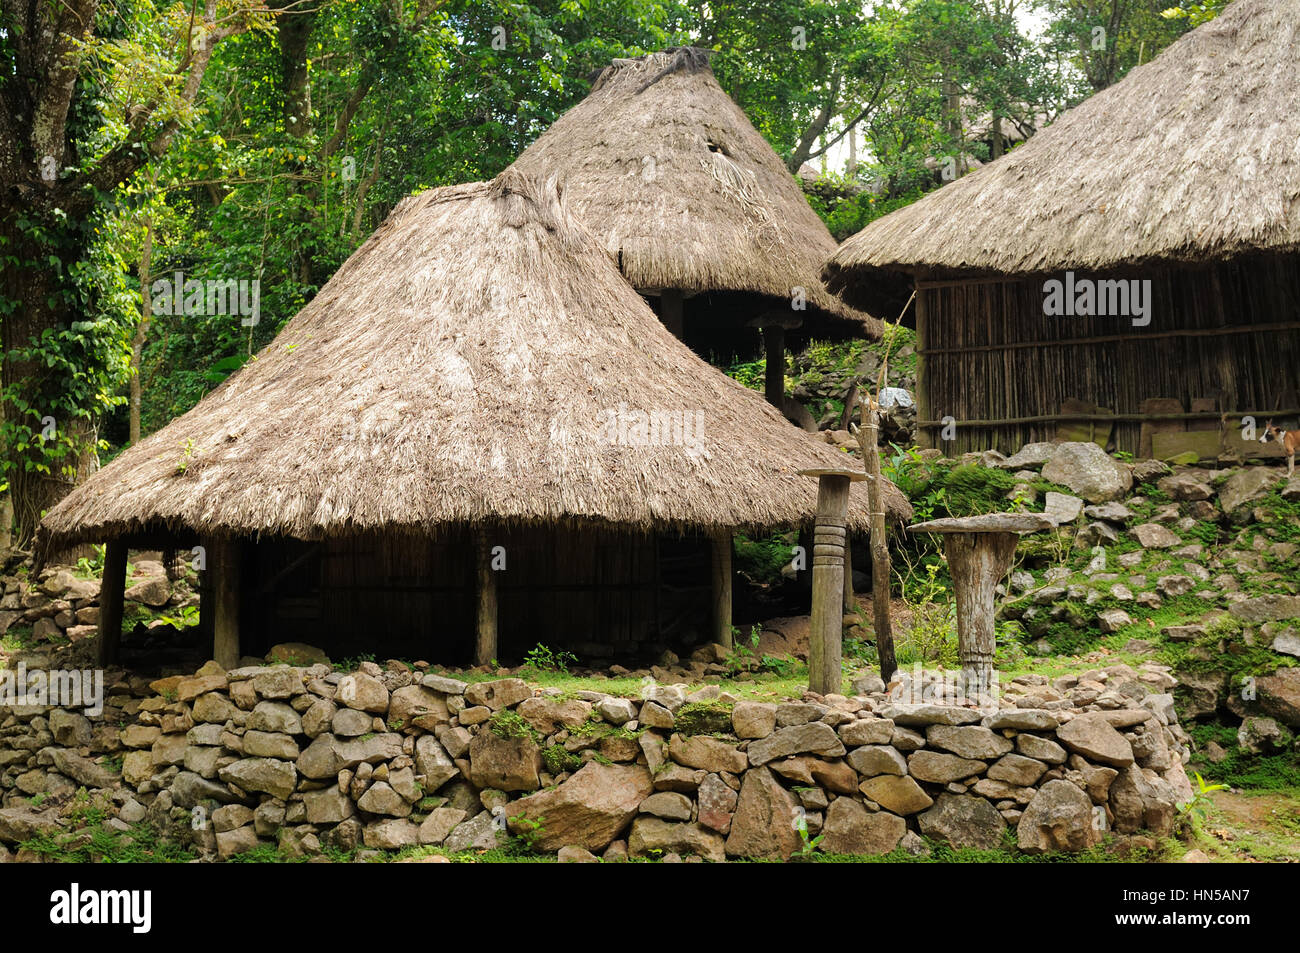 Maison de paille dans le village ethnique sur une île de Timor Photo Stock  - Alamy